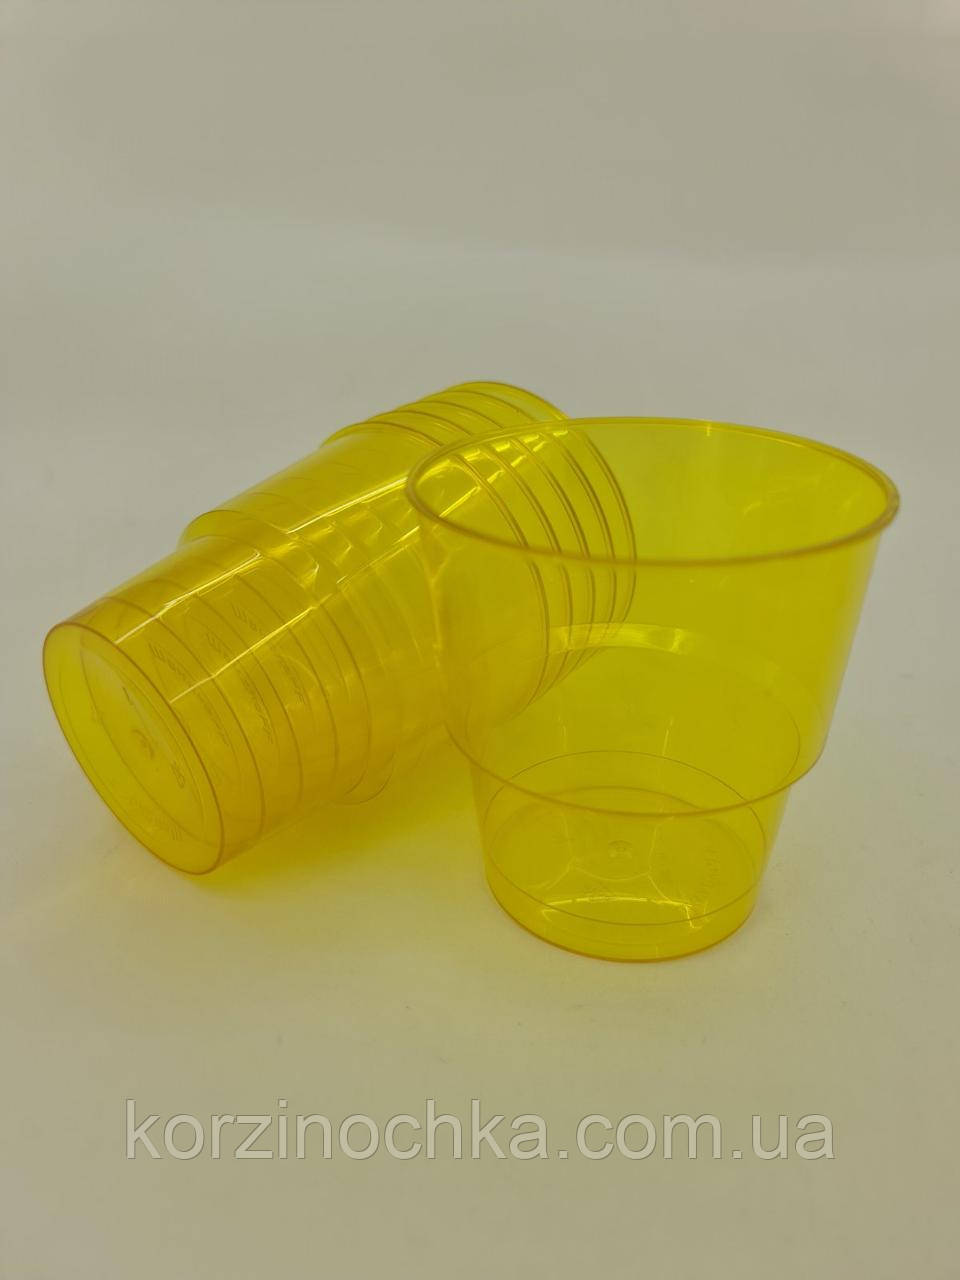 Стакан Склоподібний Пластиковий(без ніжки)200гр(25 шт)жовтий(36Х25)Стакан Скловидний